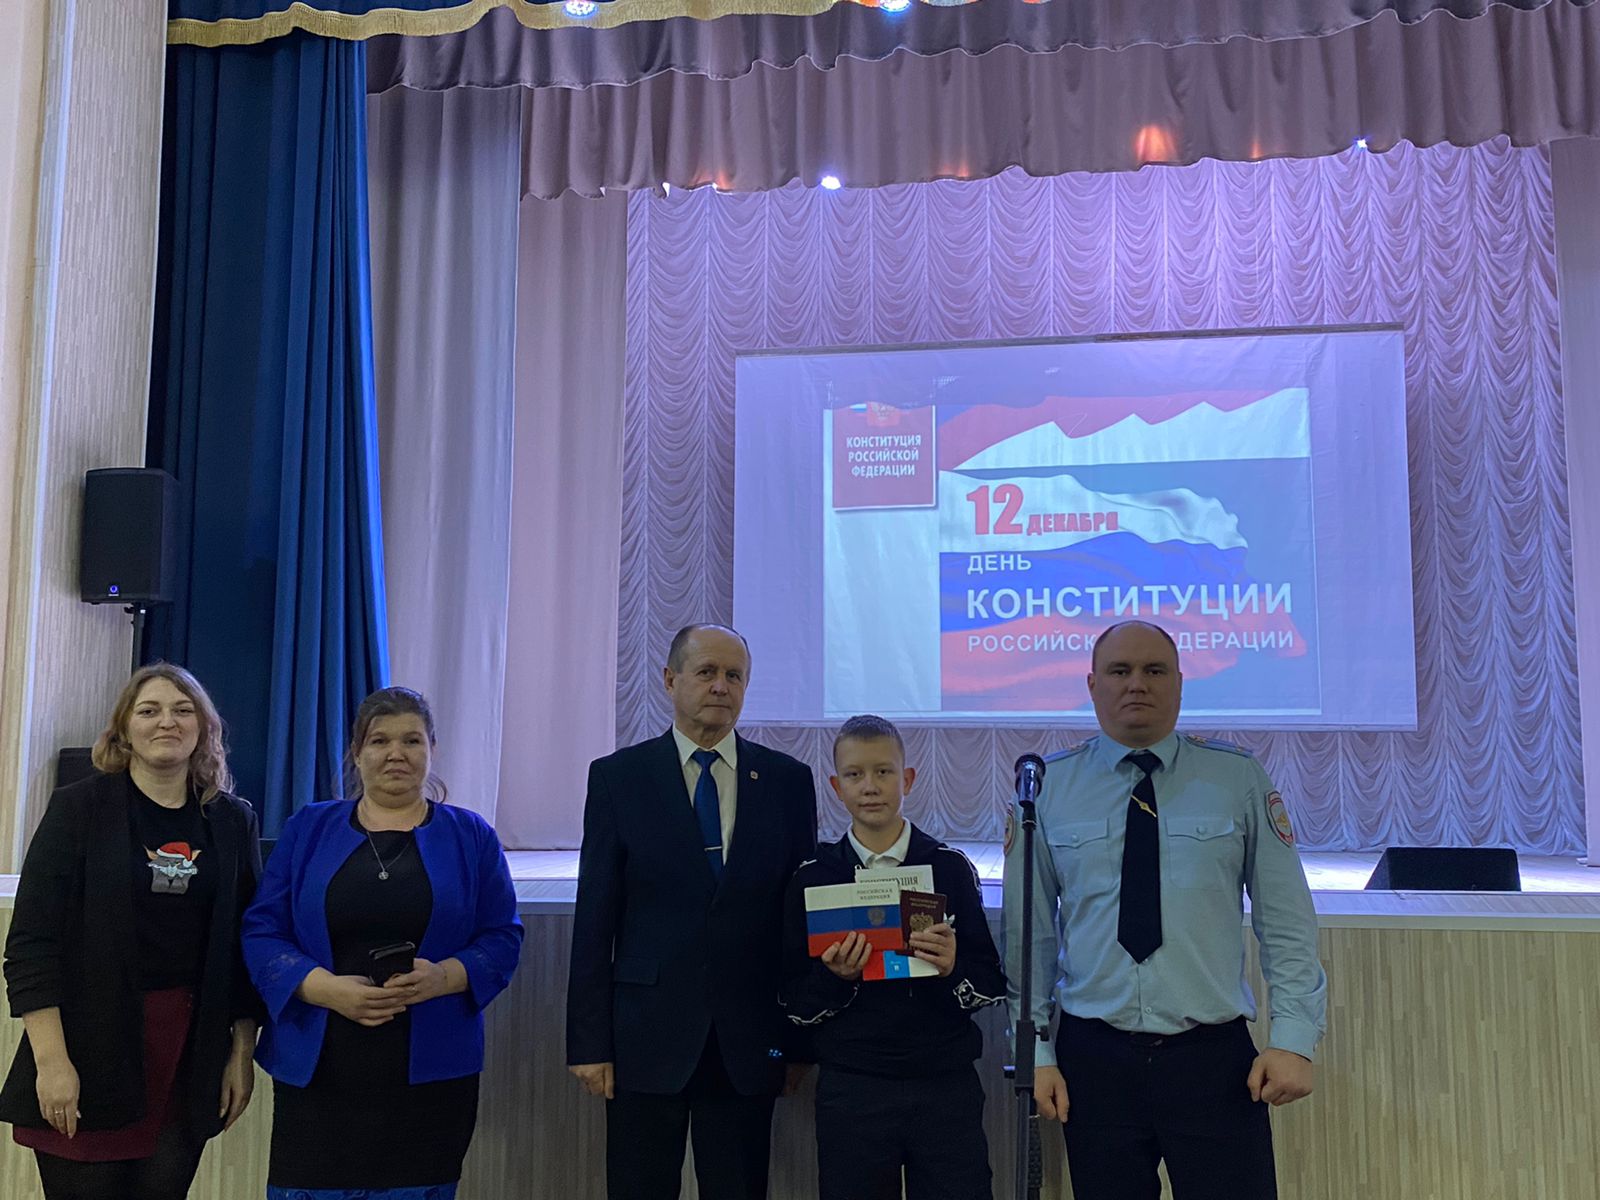 14 декабря в районном Доме культуры состоялось мероприятие, посвященное 30-летию Конституции Российской Федерации.